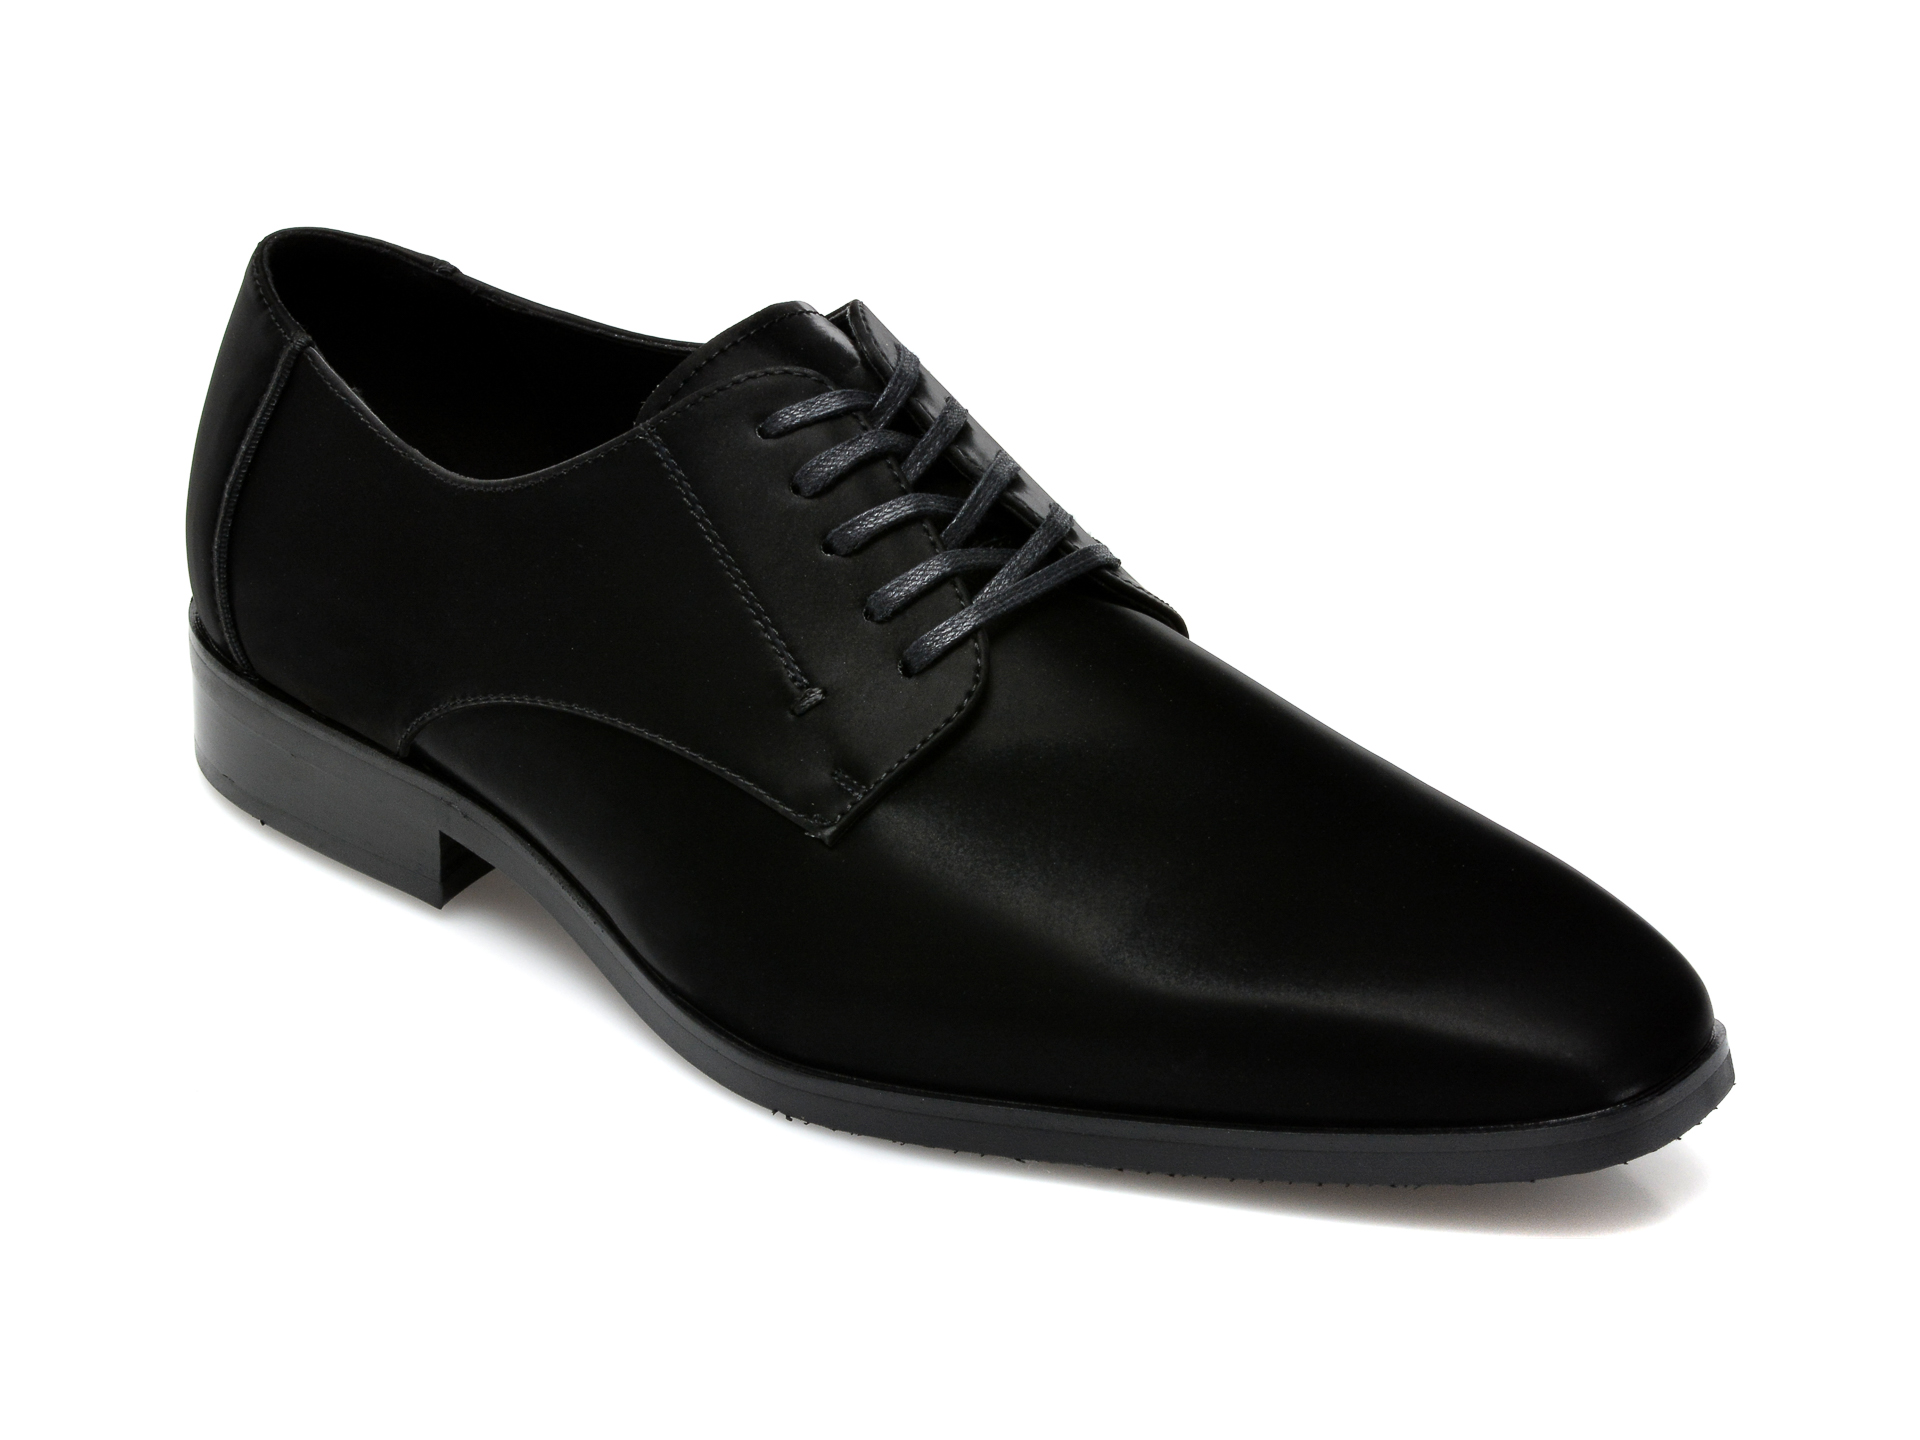 Pantofi ALDO negri, Montecassino004, din piele ecologica Aldo imagine 2022 reducere